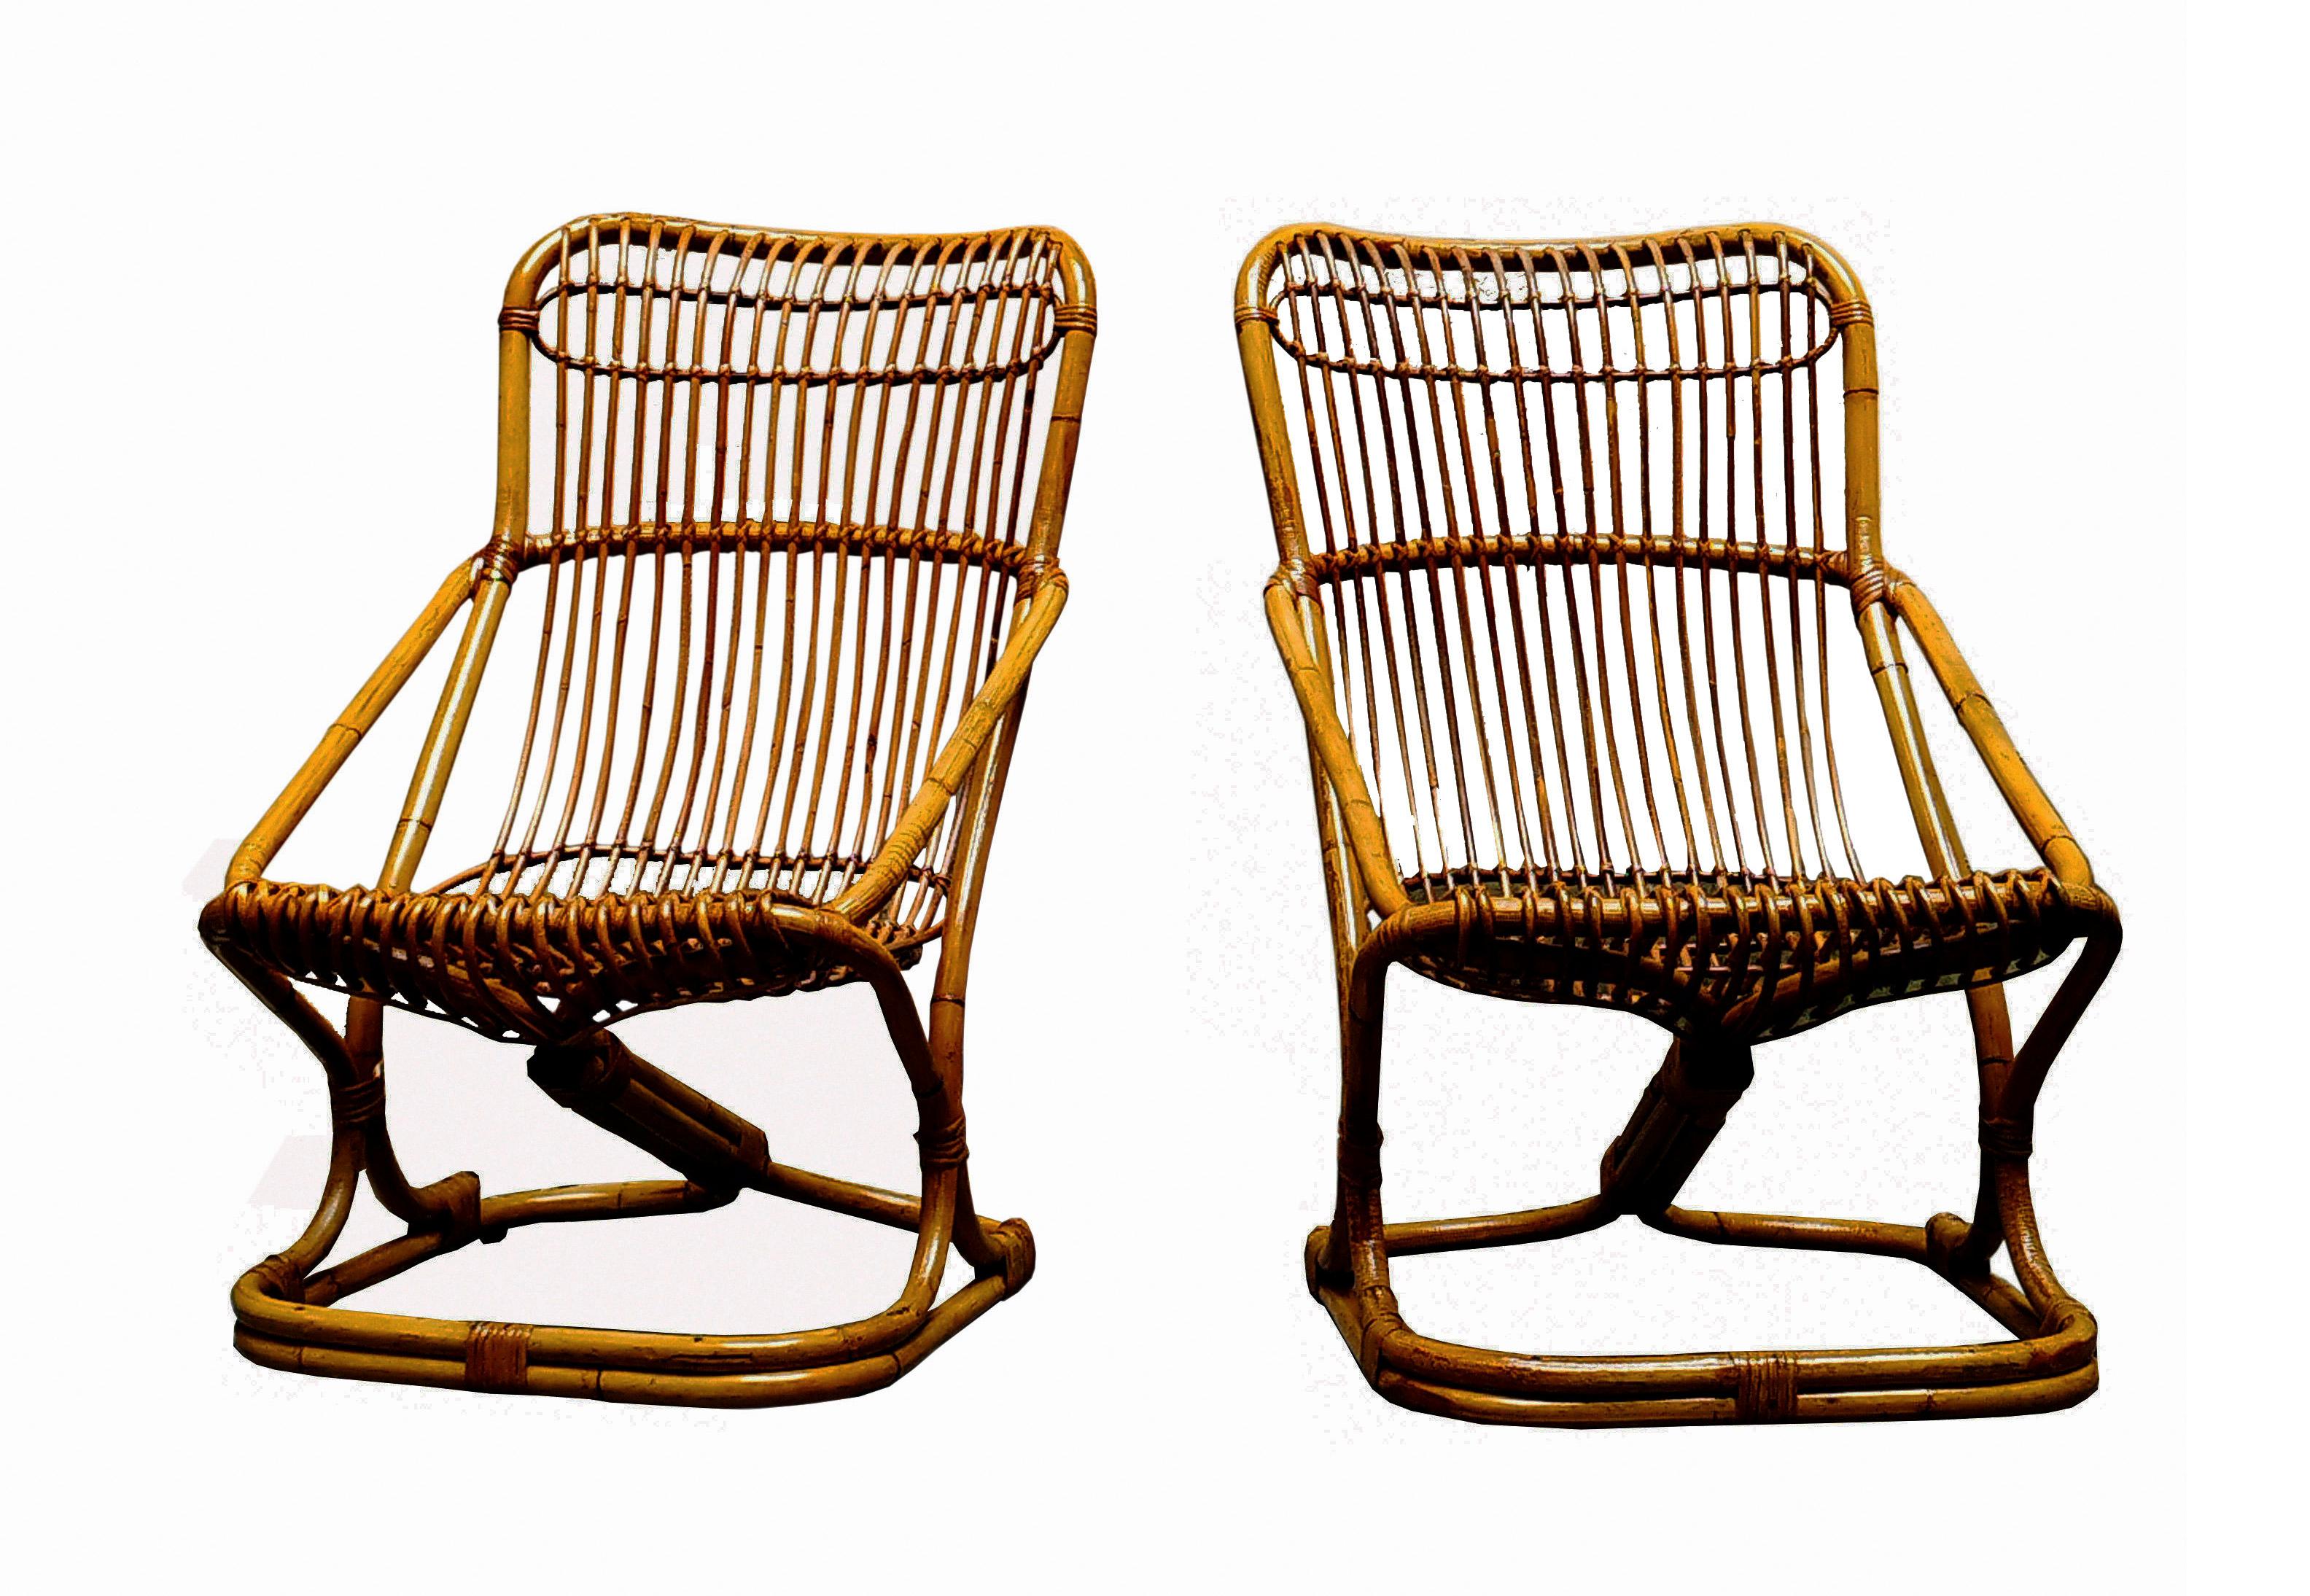 Elegantes Paar Malakka-Sessel aus den 1960er Jahren, entworfen von Tito Agnoli. Tito Agnoli wurde in Lima als Sohn einer italienischen Familie geboren. Er war zunächst Architekt und später Designer und arbeitete mit zahlreichen italienischen